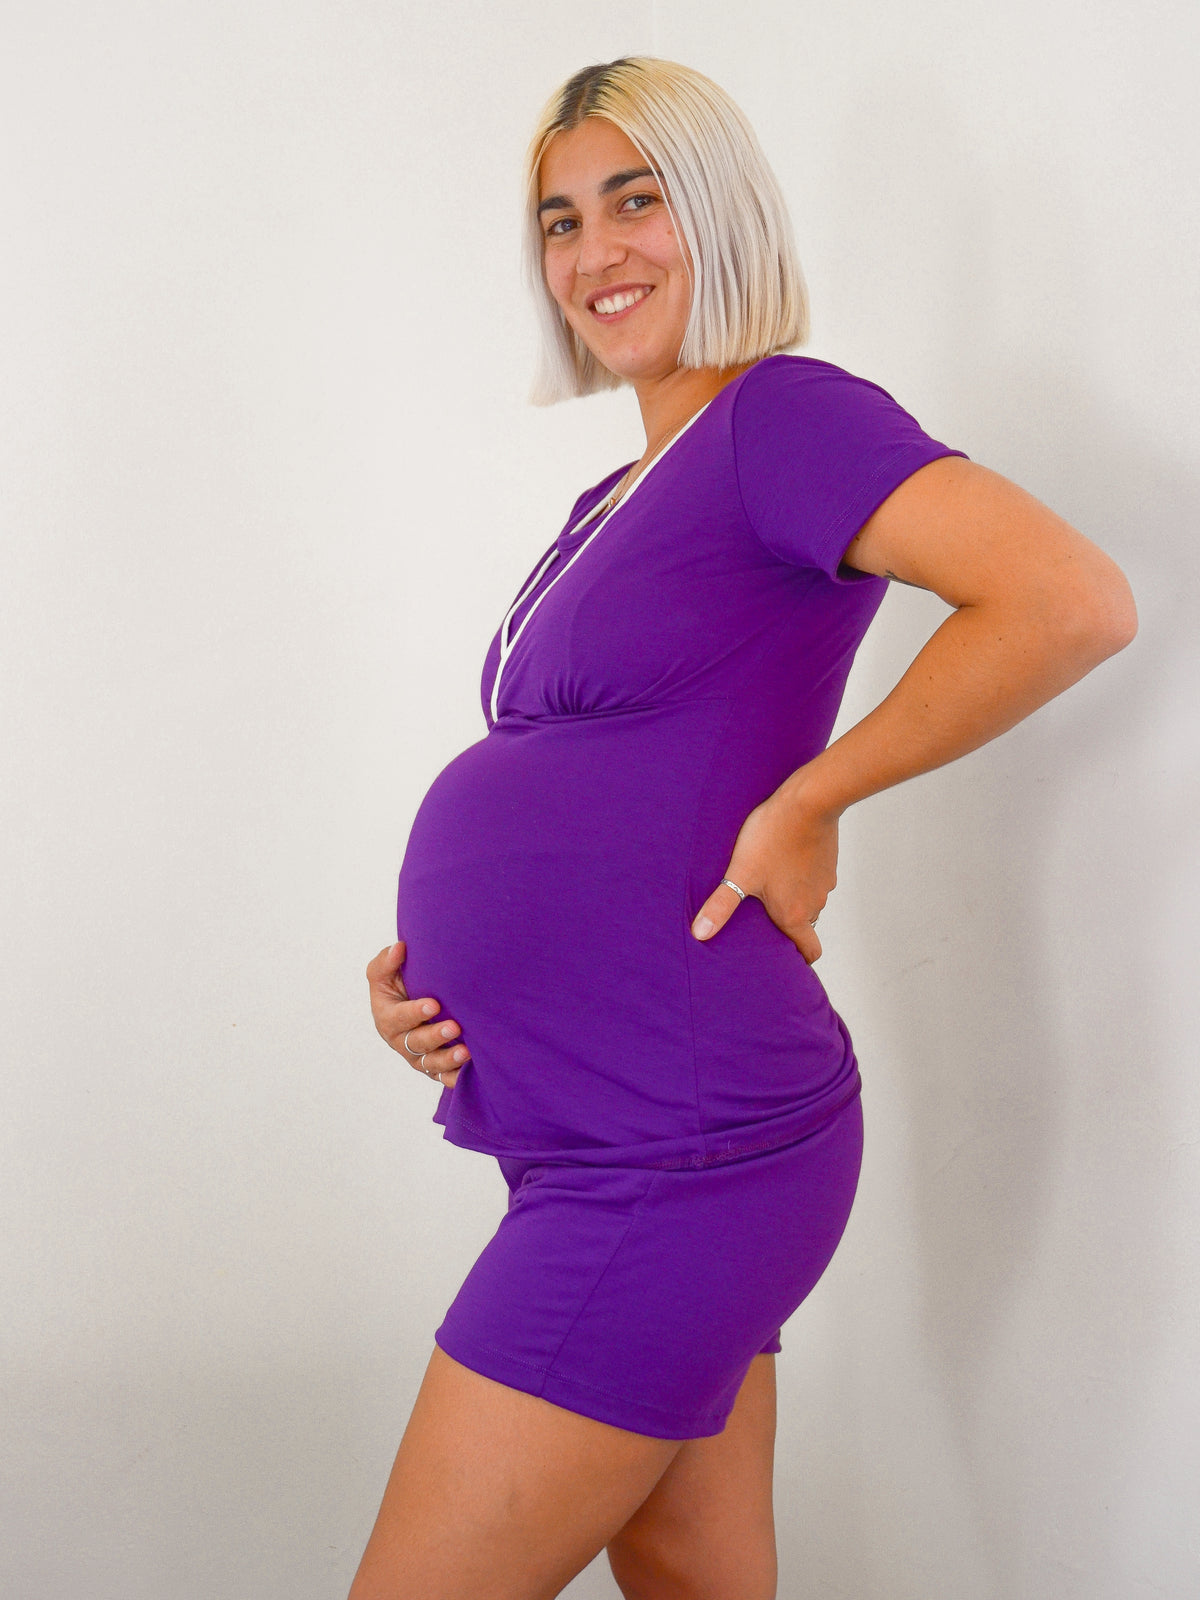 Ropa de maternidad embarazo fotografías e imágenes de alta